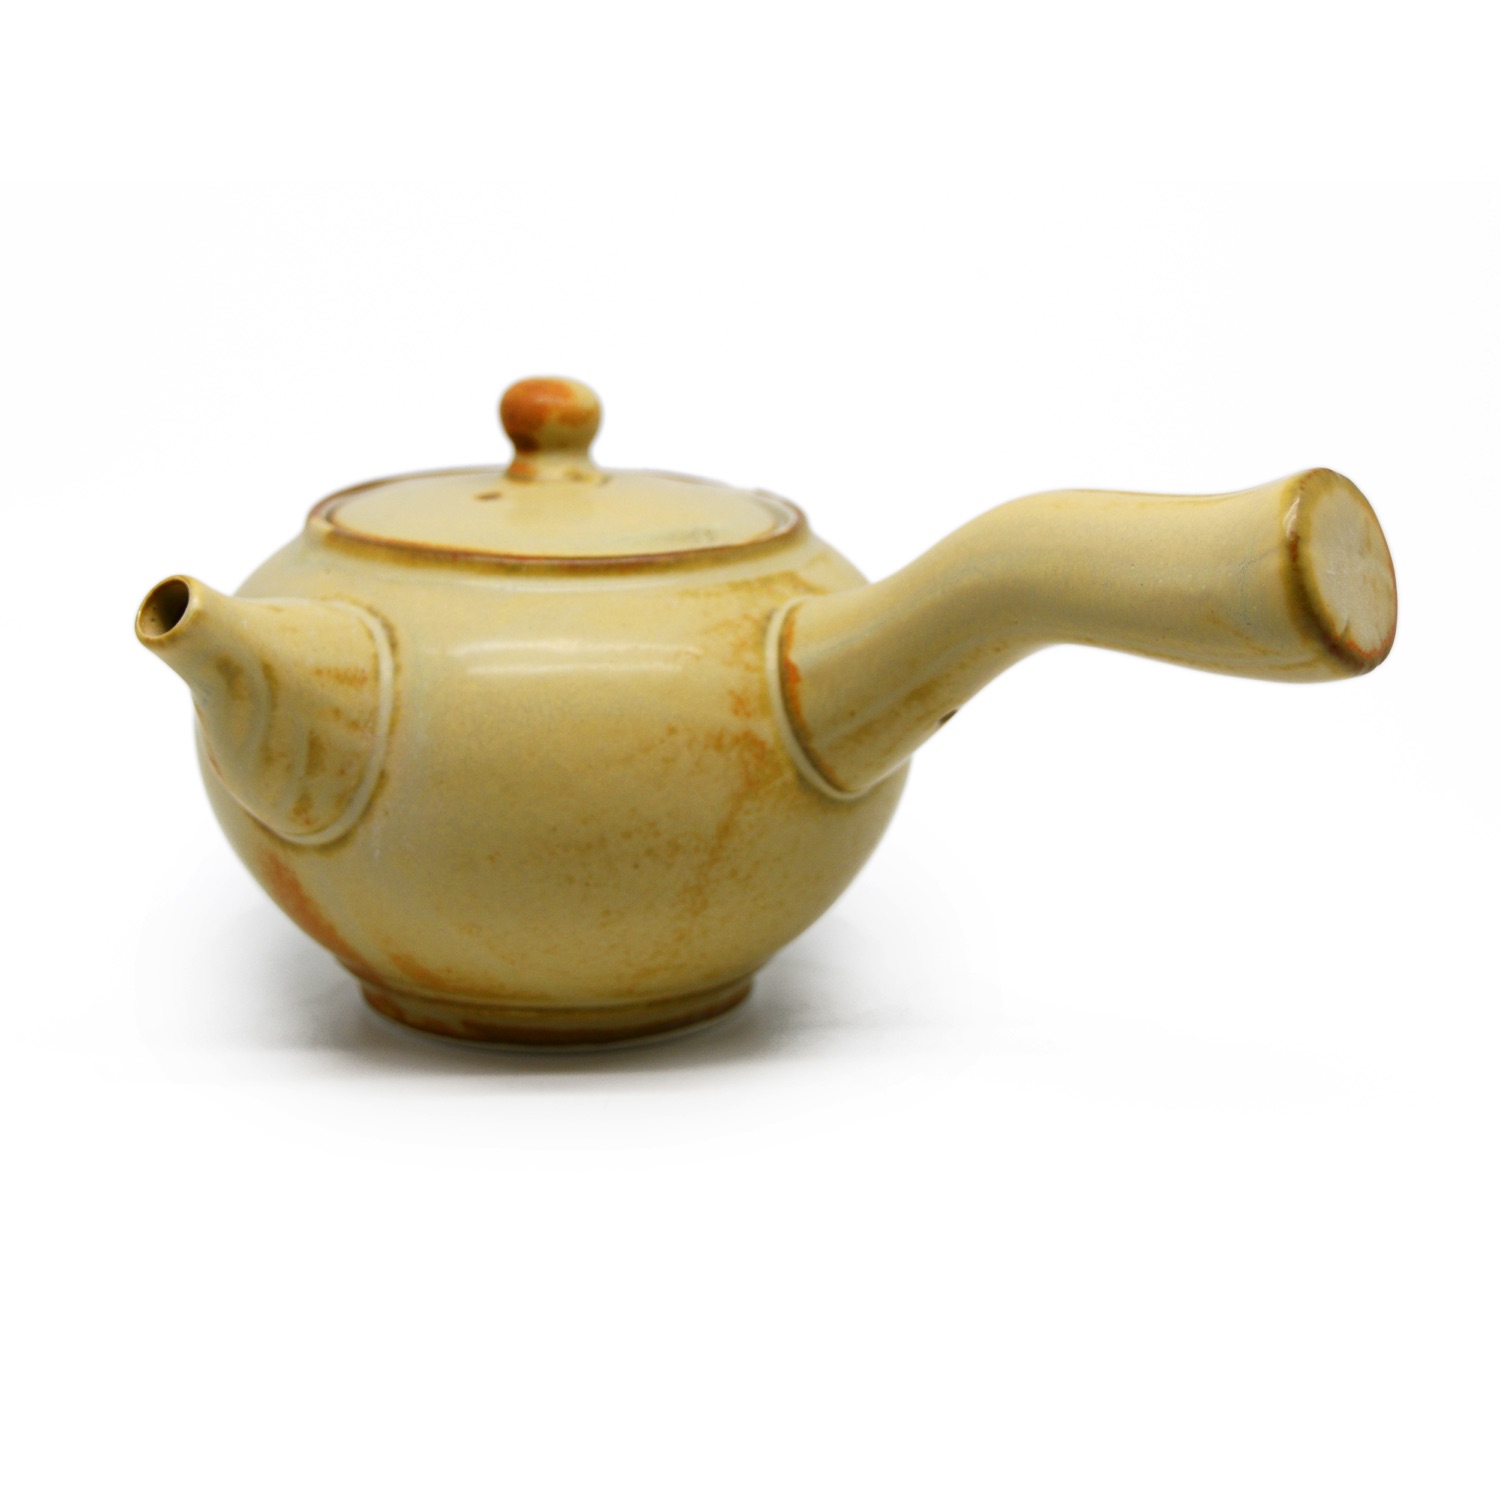 Long Handle teapot